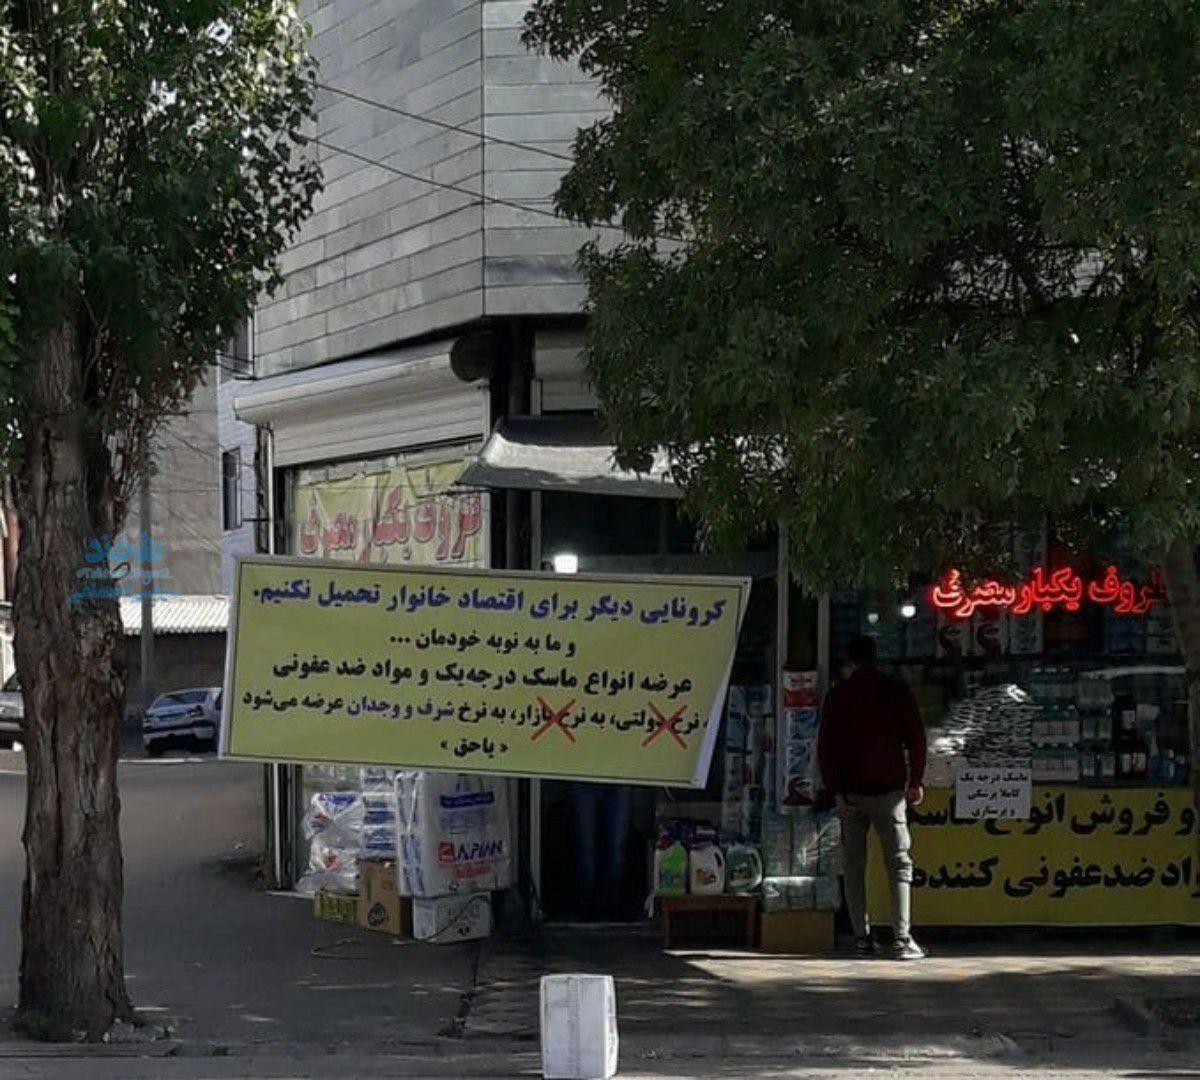 وجدان بیدار مغازه دار اردبیلی در فضای مجازی غوغا کرد +عکس